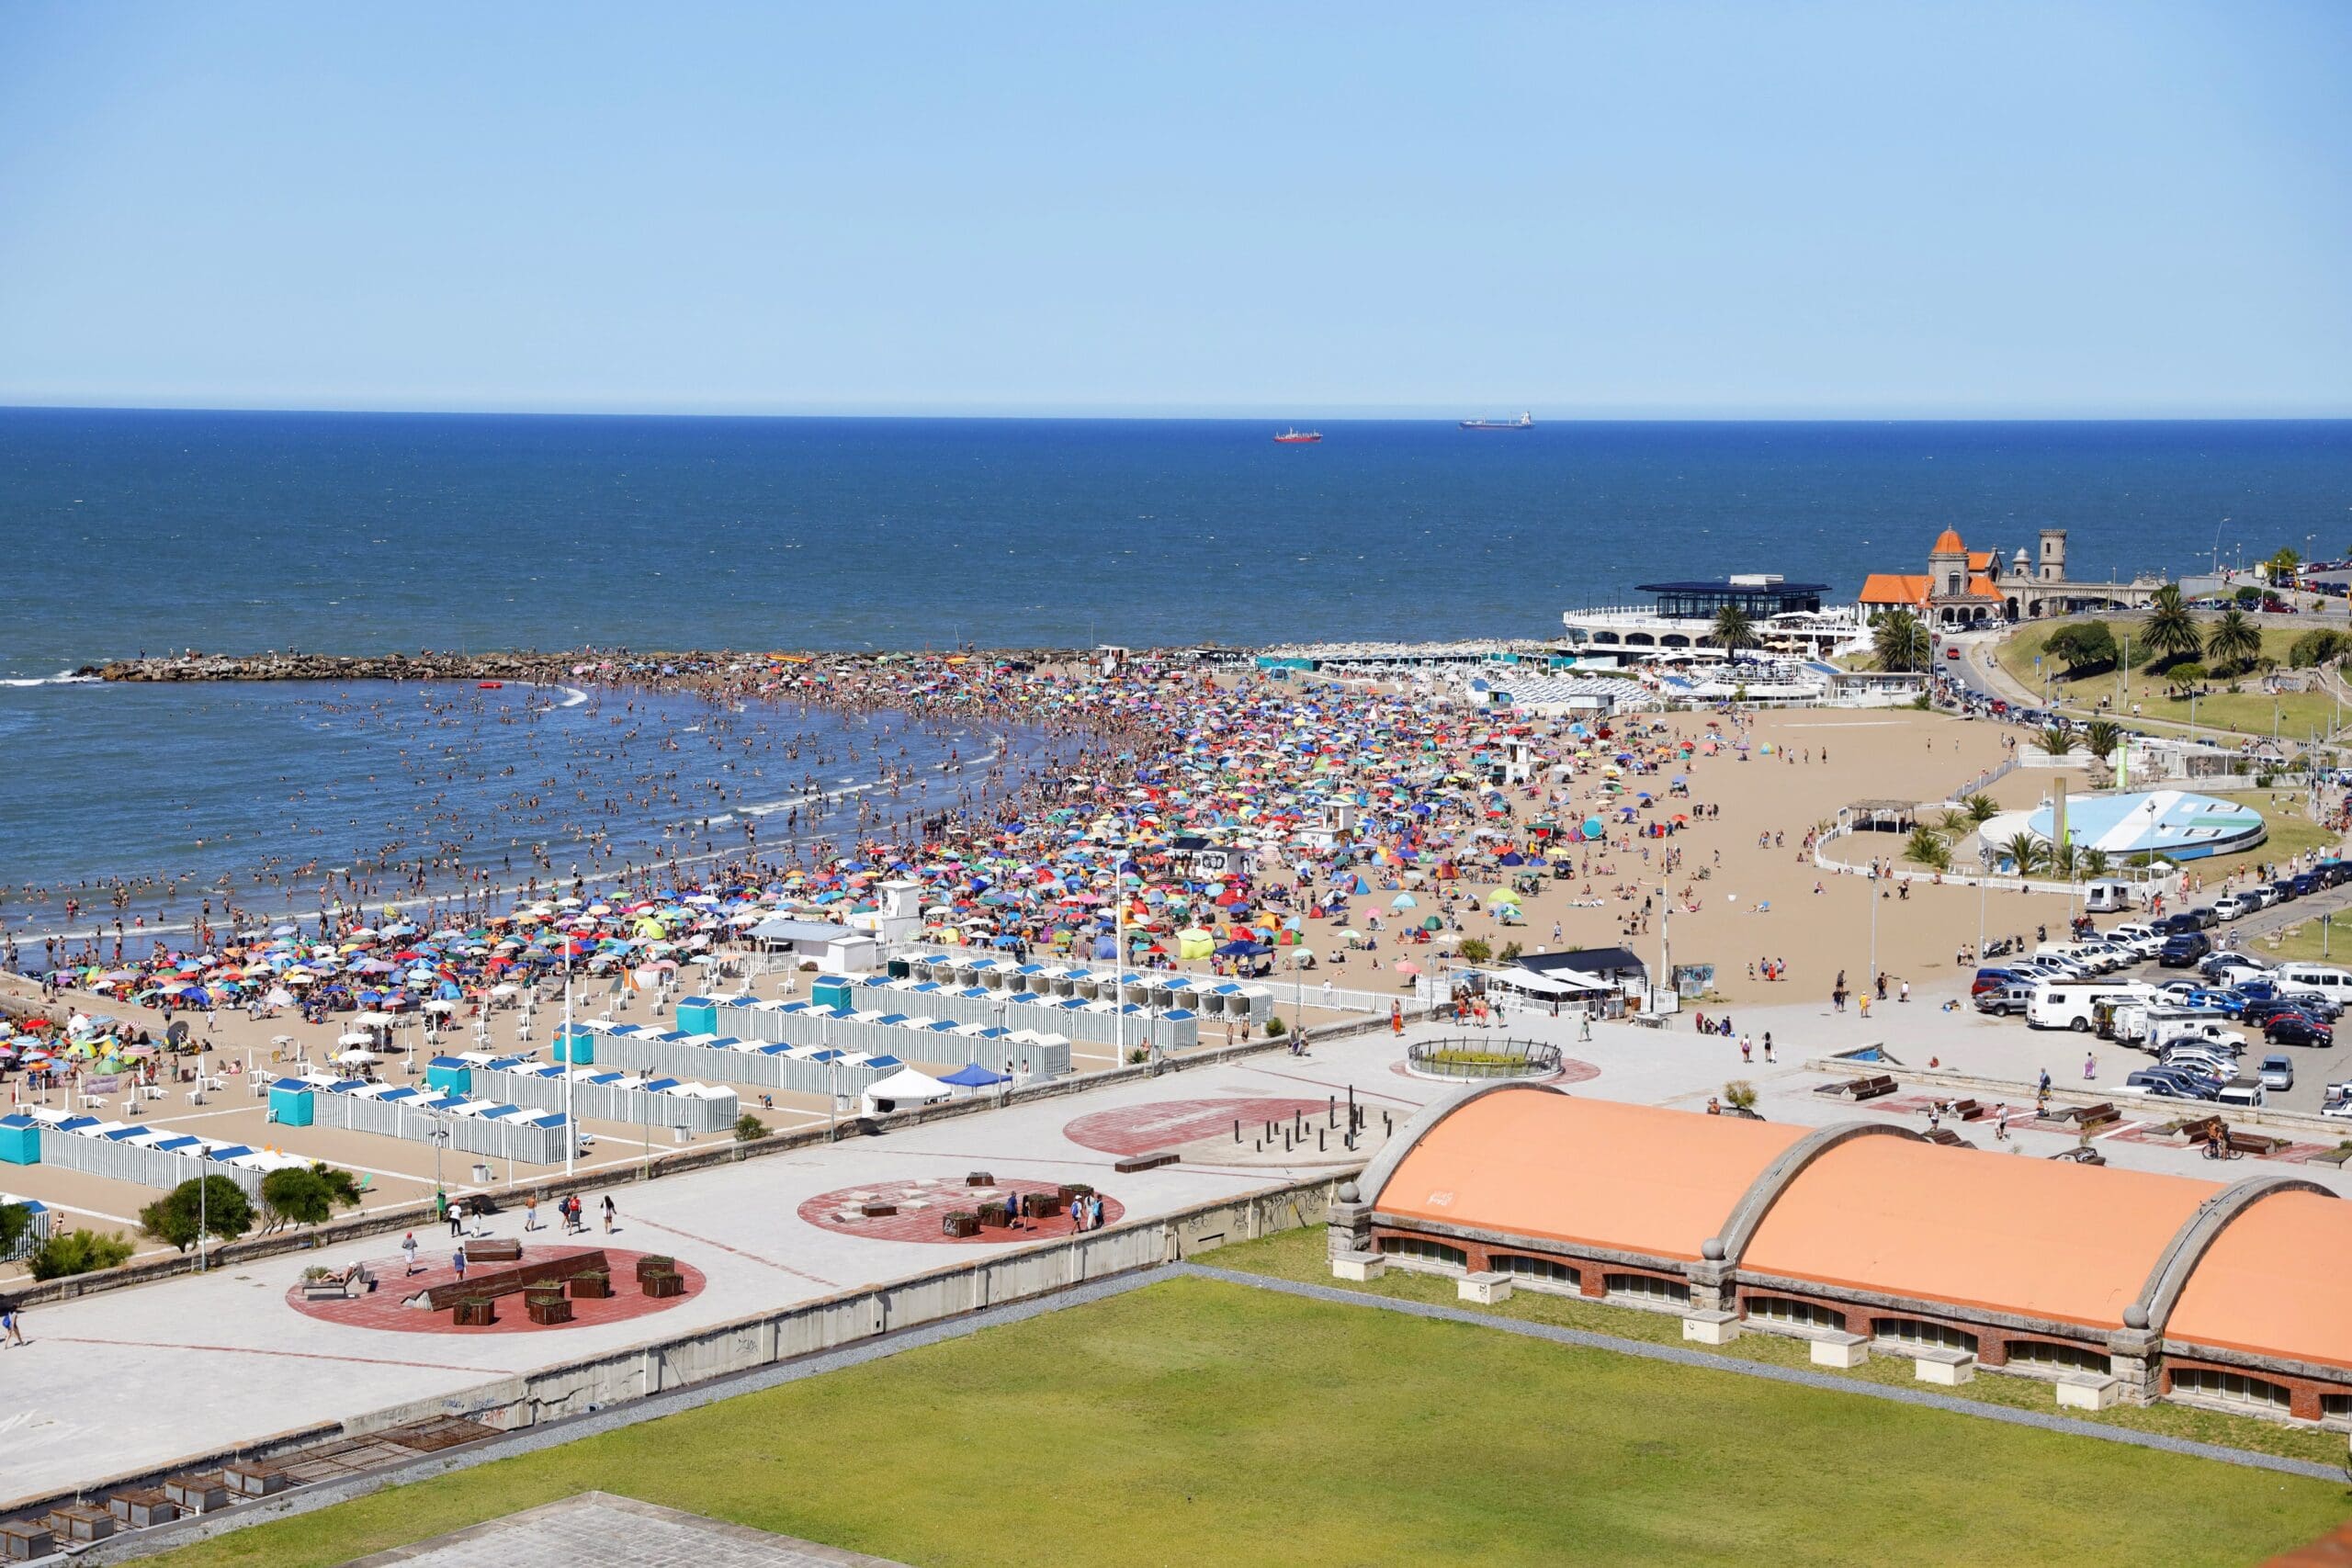 Mar del Plata alcanzó los 3 millones de turistas en temporada de verano